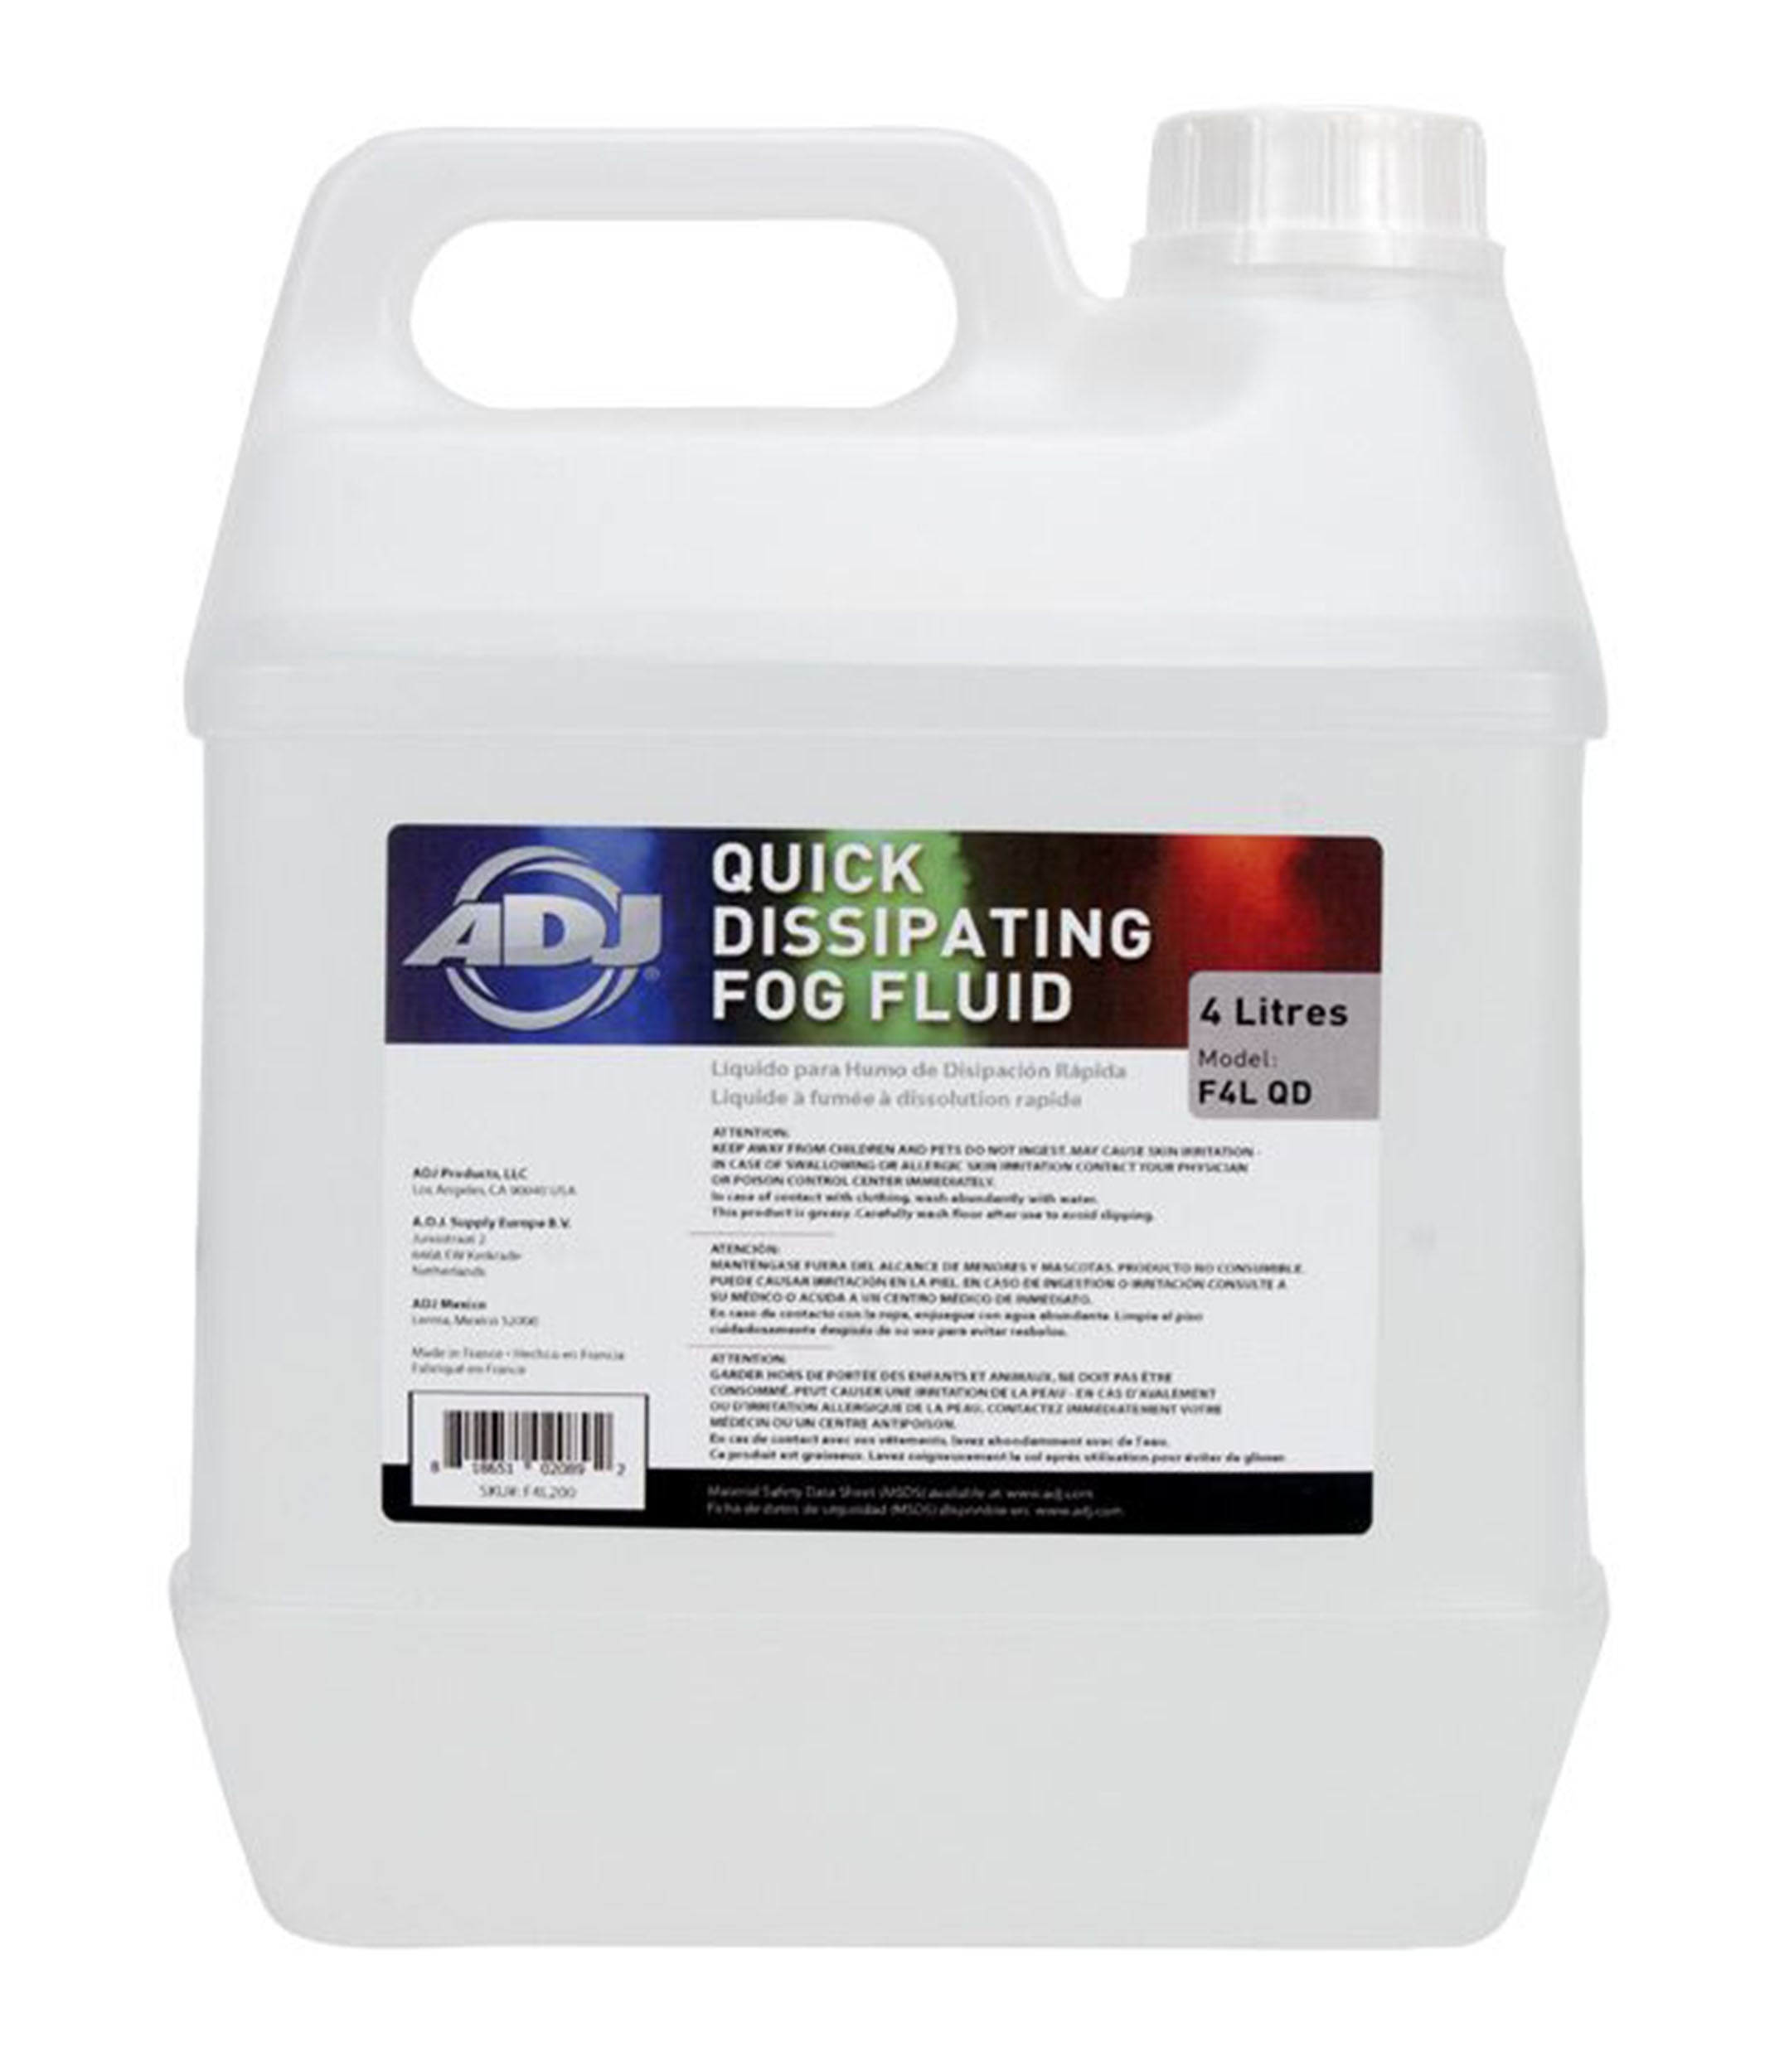 ADJ F4L QD, Quick-Dissipating Fog Fluid - 4 Liters by ADJ